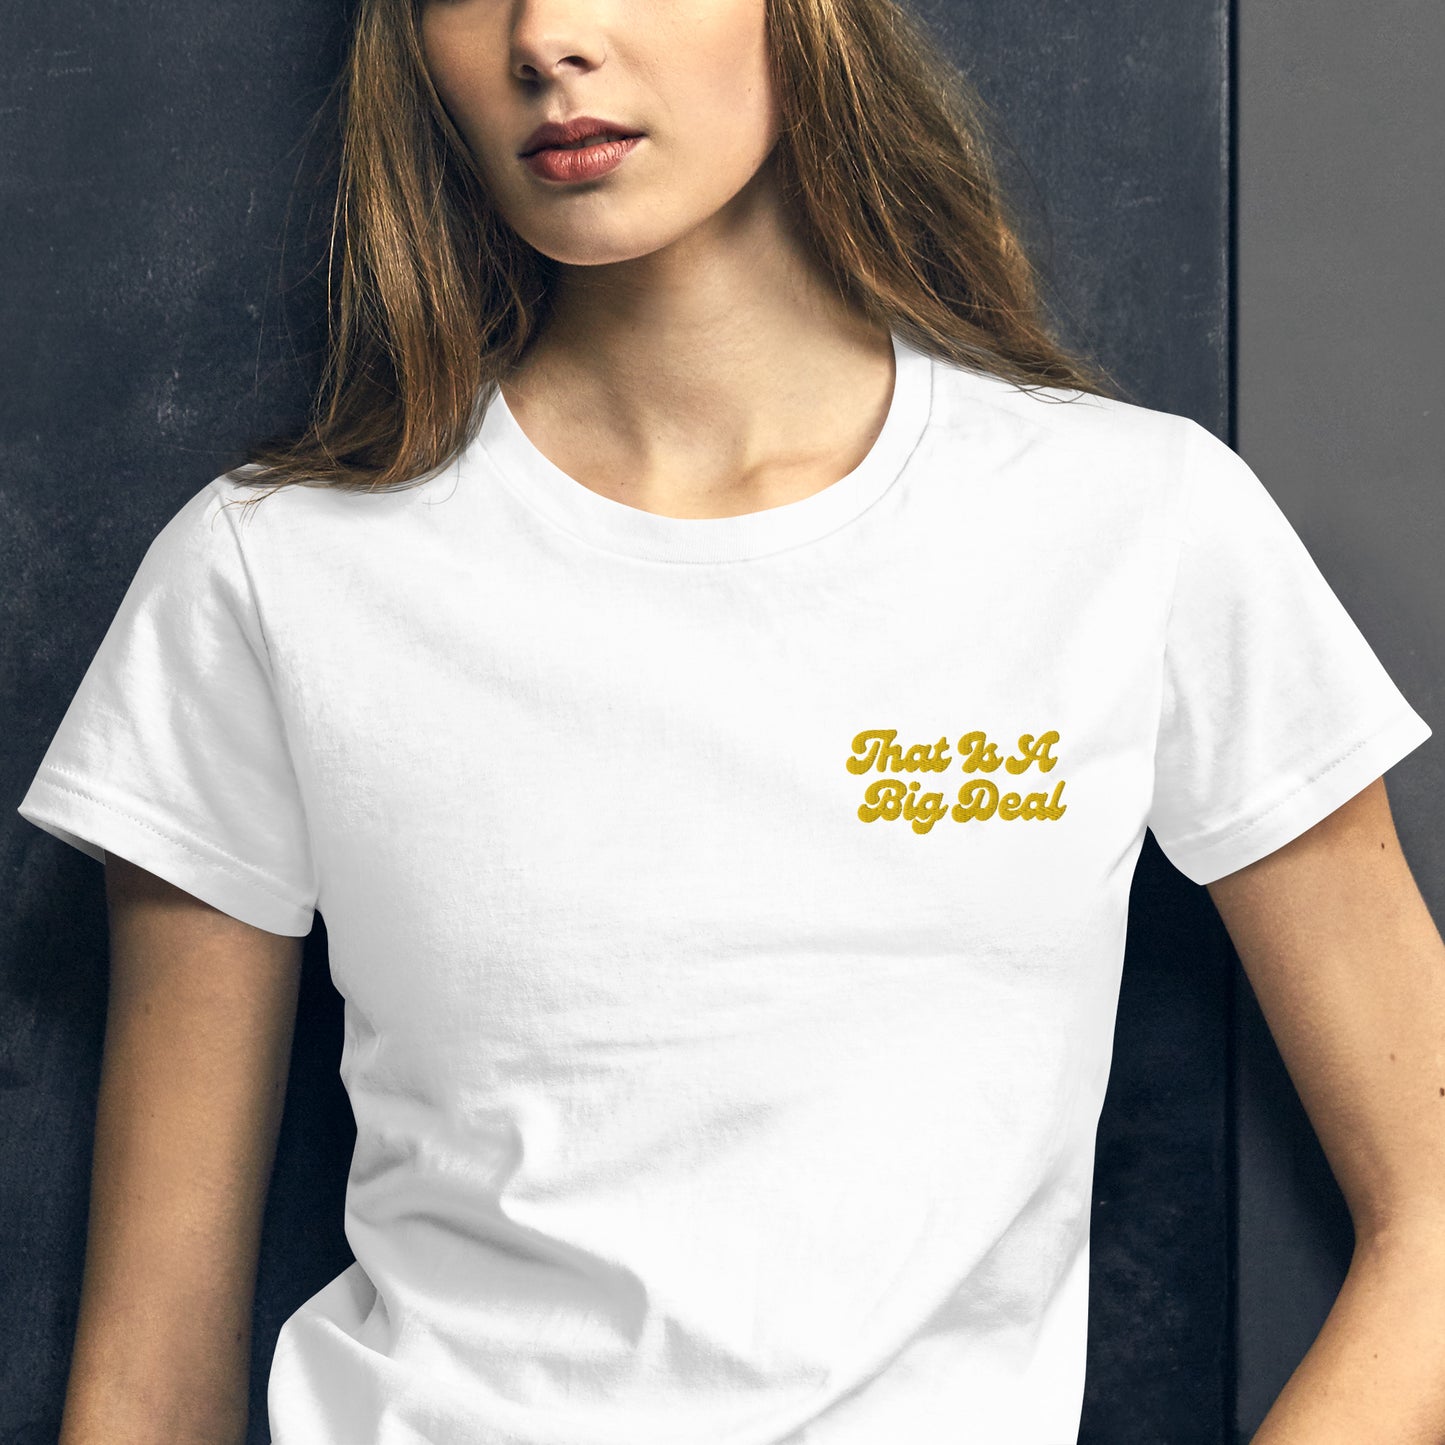 A Big DealWomen's short sleeve t-shirt